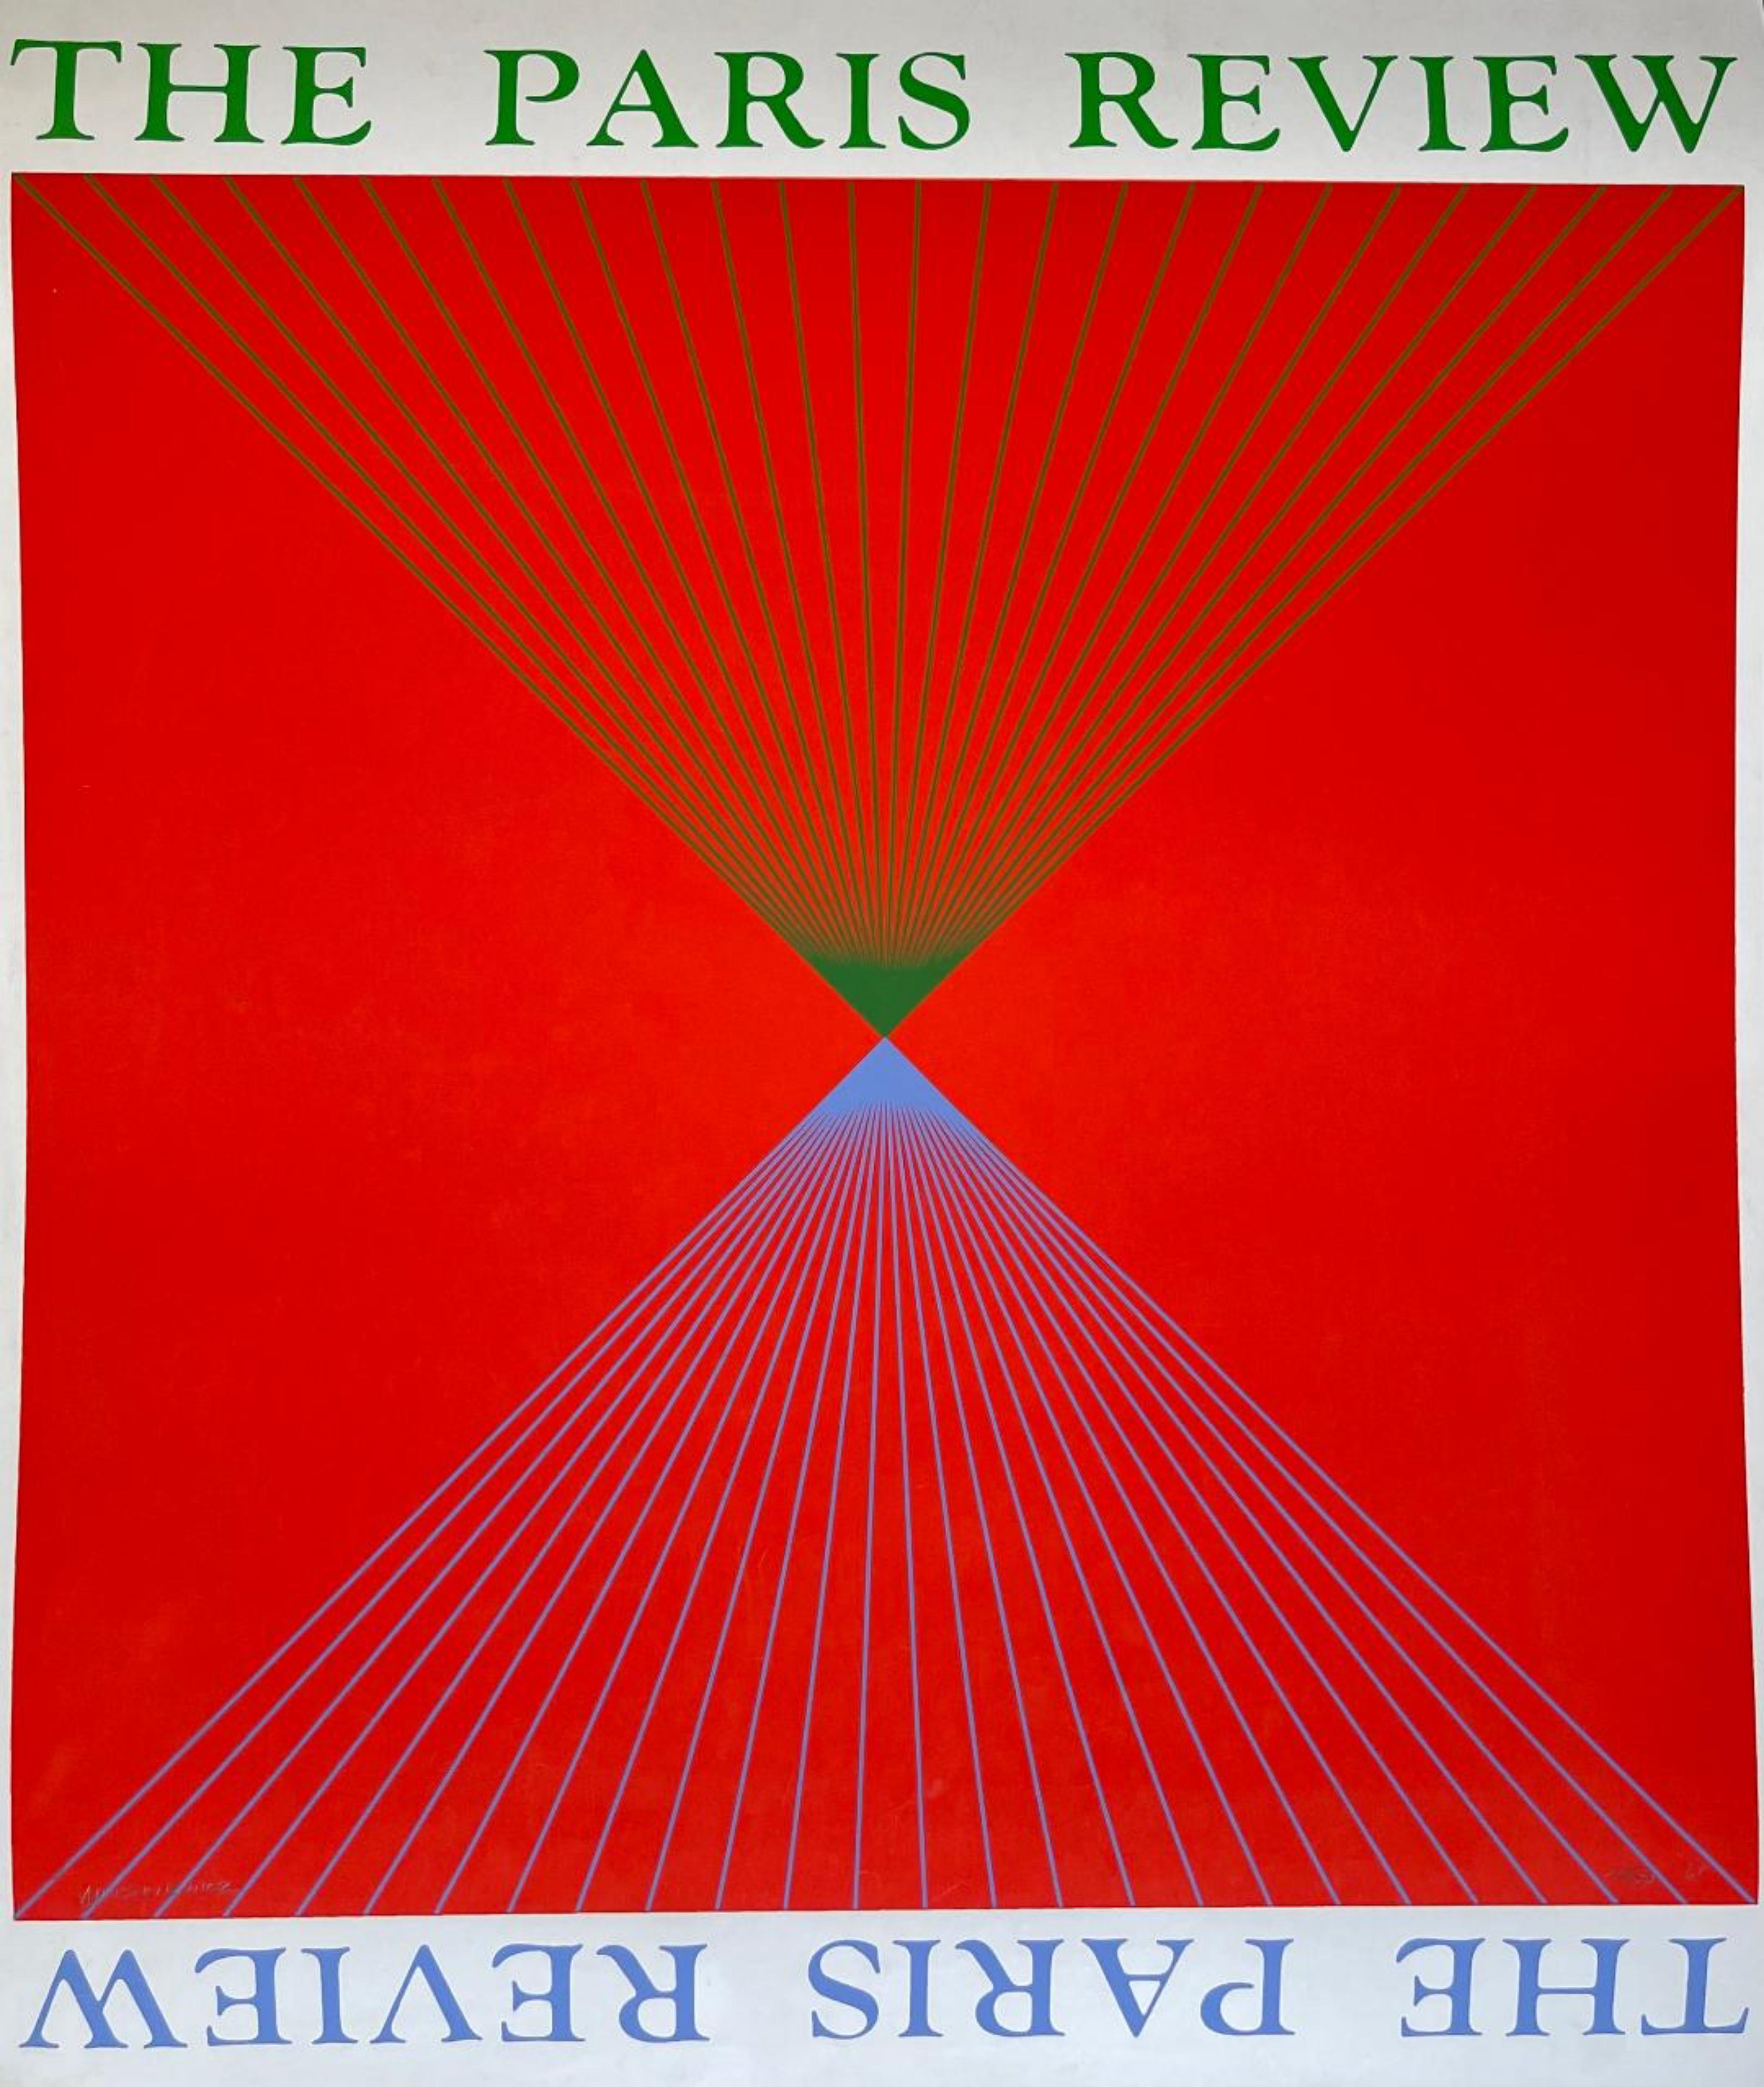 Abstract Print Richard Anuszkiewicz - The Paris Review, estampe d'abstraction géométrique Op Art des années 1960, signée et numérotée.